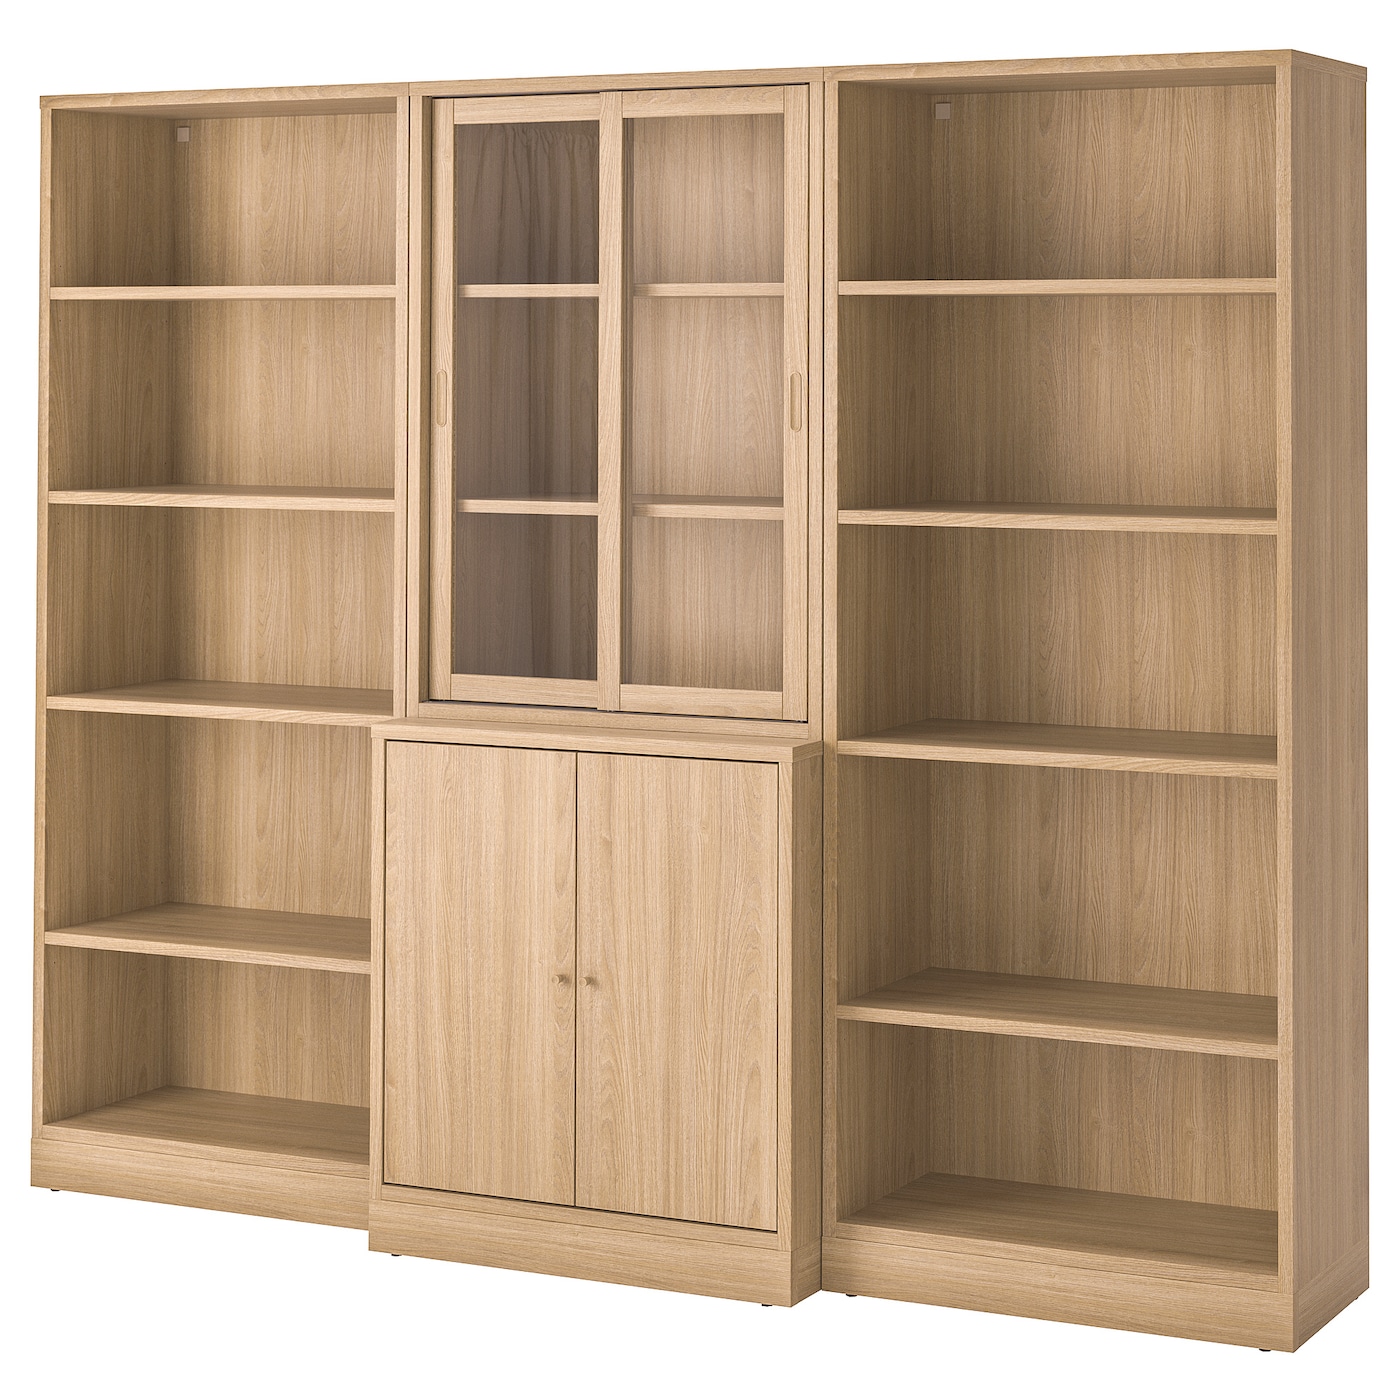 Книжный шкаф - TONSTAD IKEA/ ТОНСТАД ИКЕА, 245х200,5 см,  коричневый